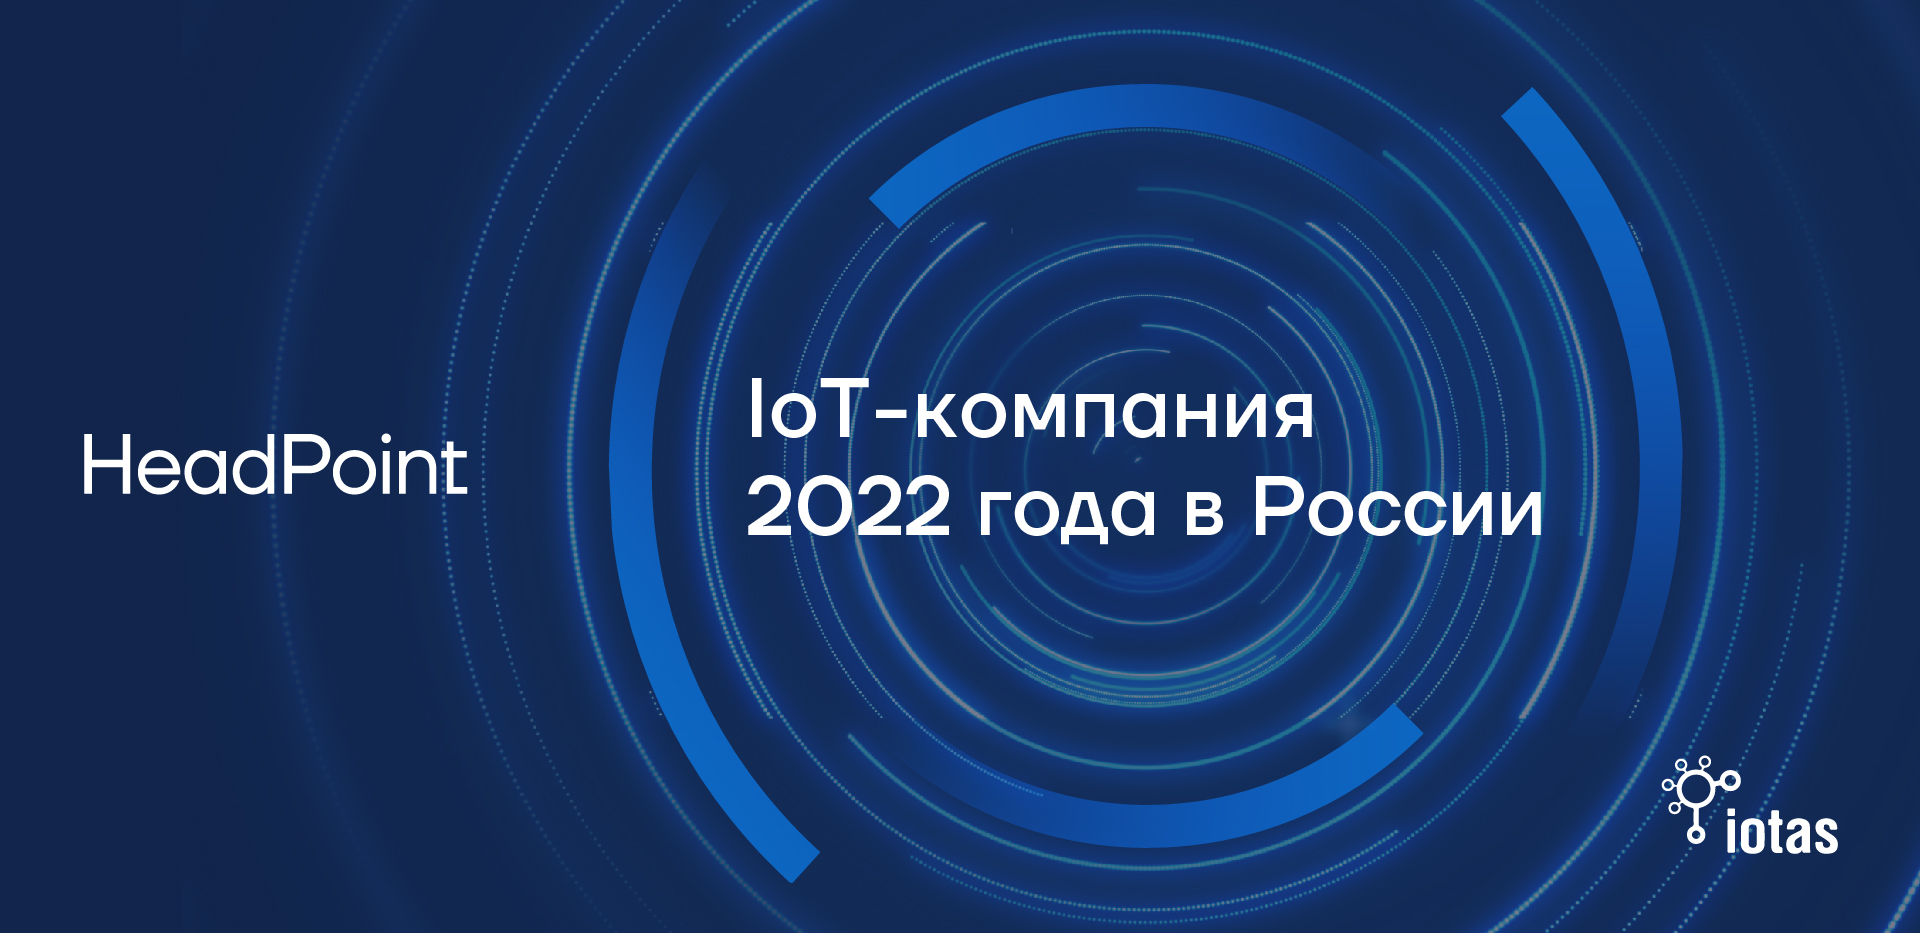 HeadPoint стала IoT-компанией года в России